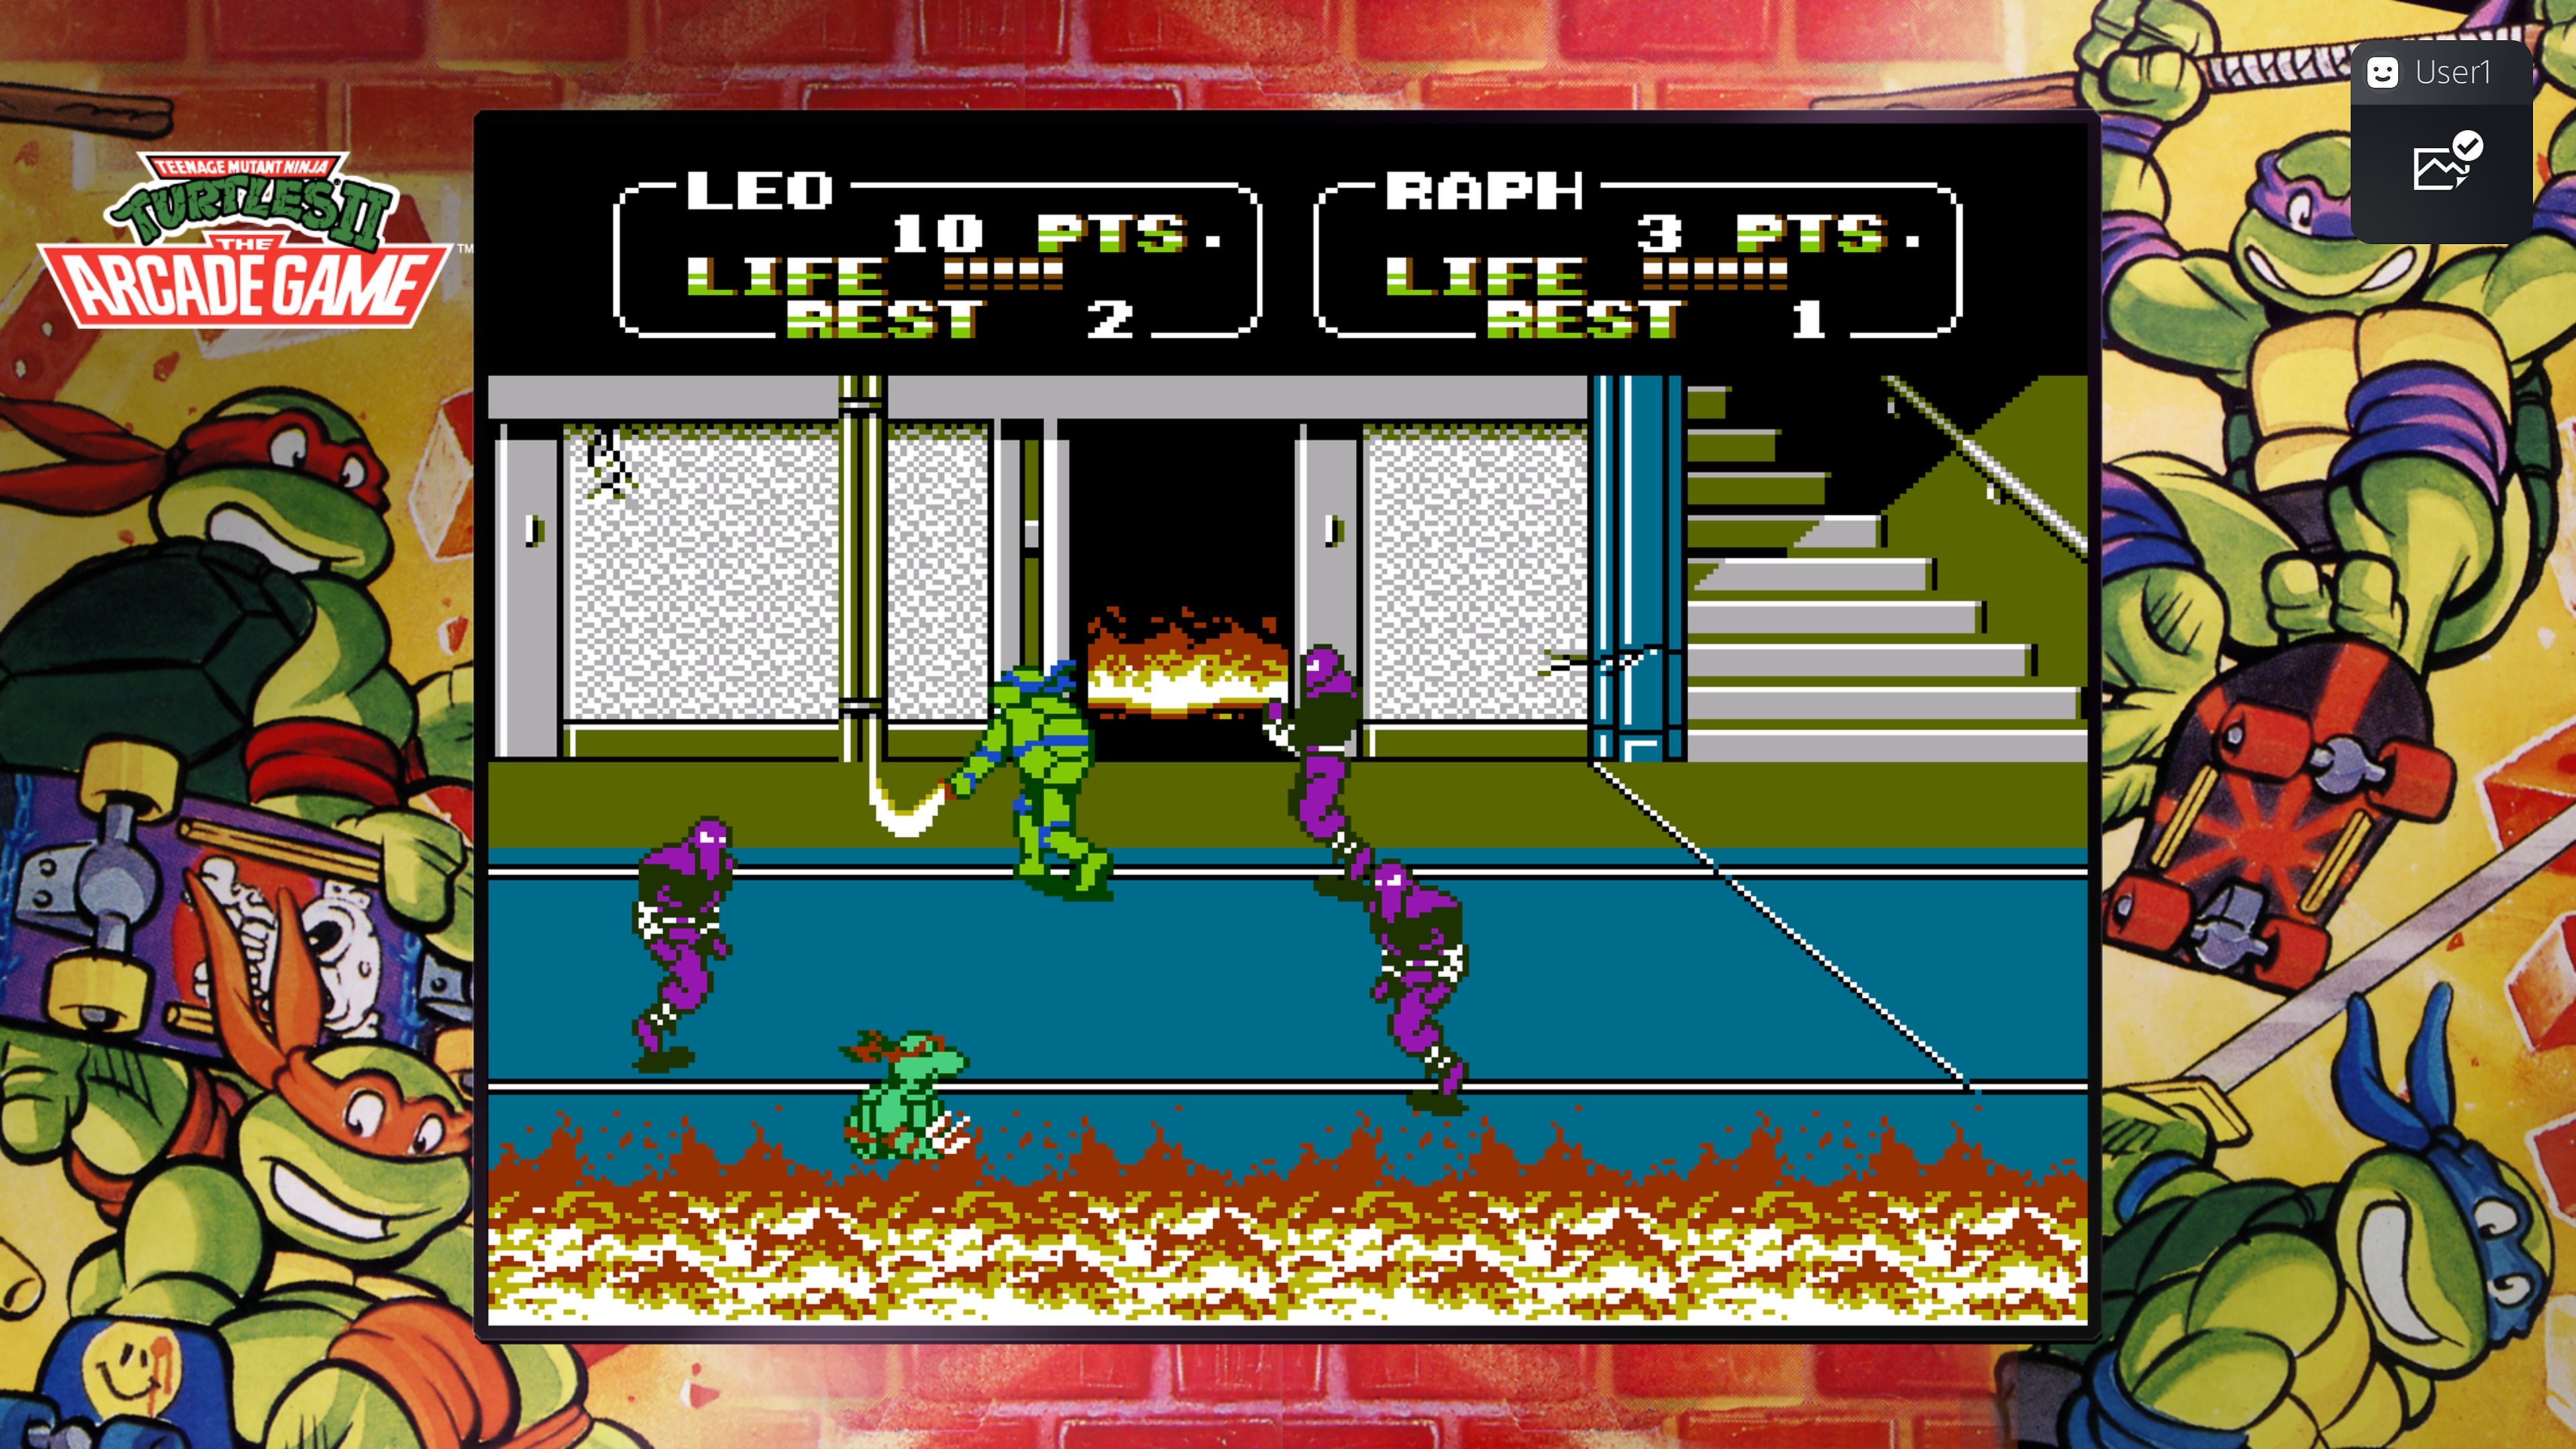 『Teenage Mutant Ninja Turtles Collection - The Arcade Game』でフットクランと戦うレオナルドとラファエルのスクリーンショット